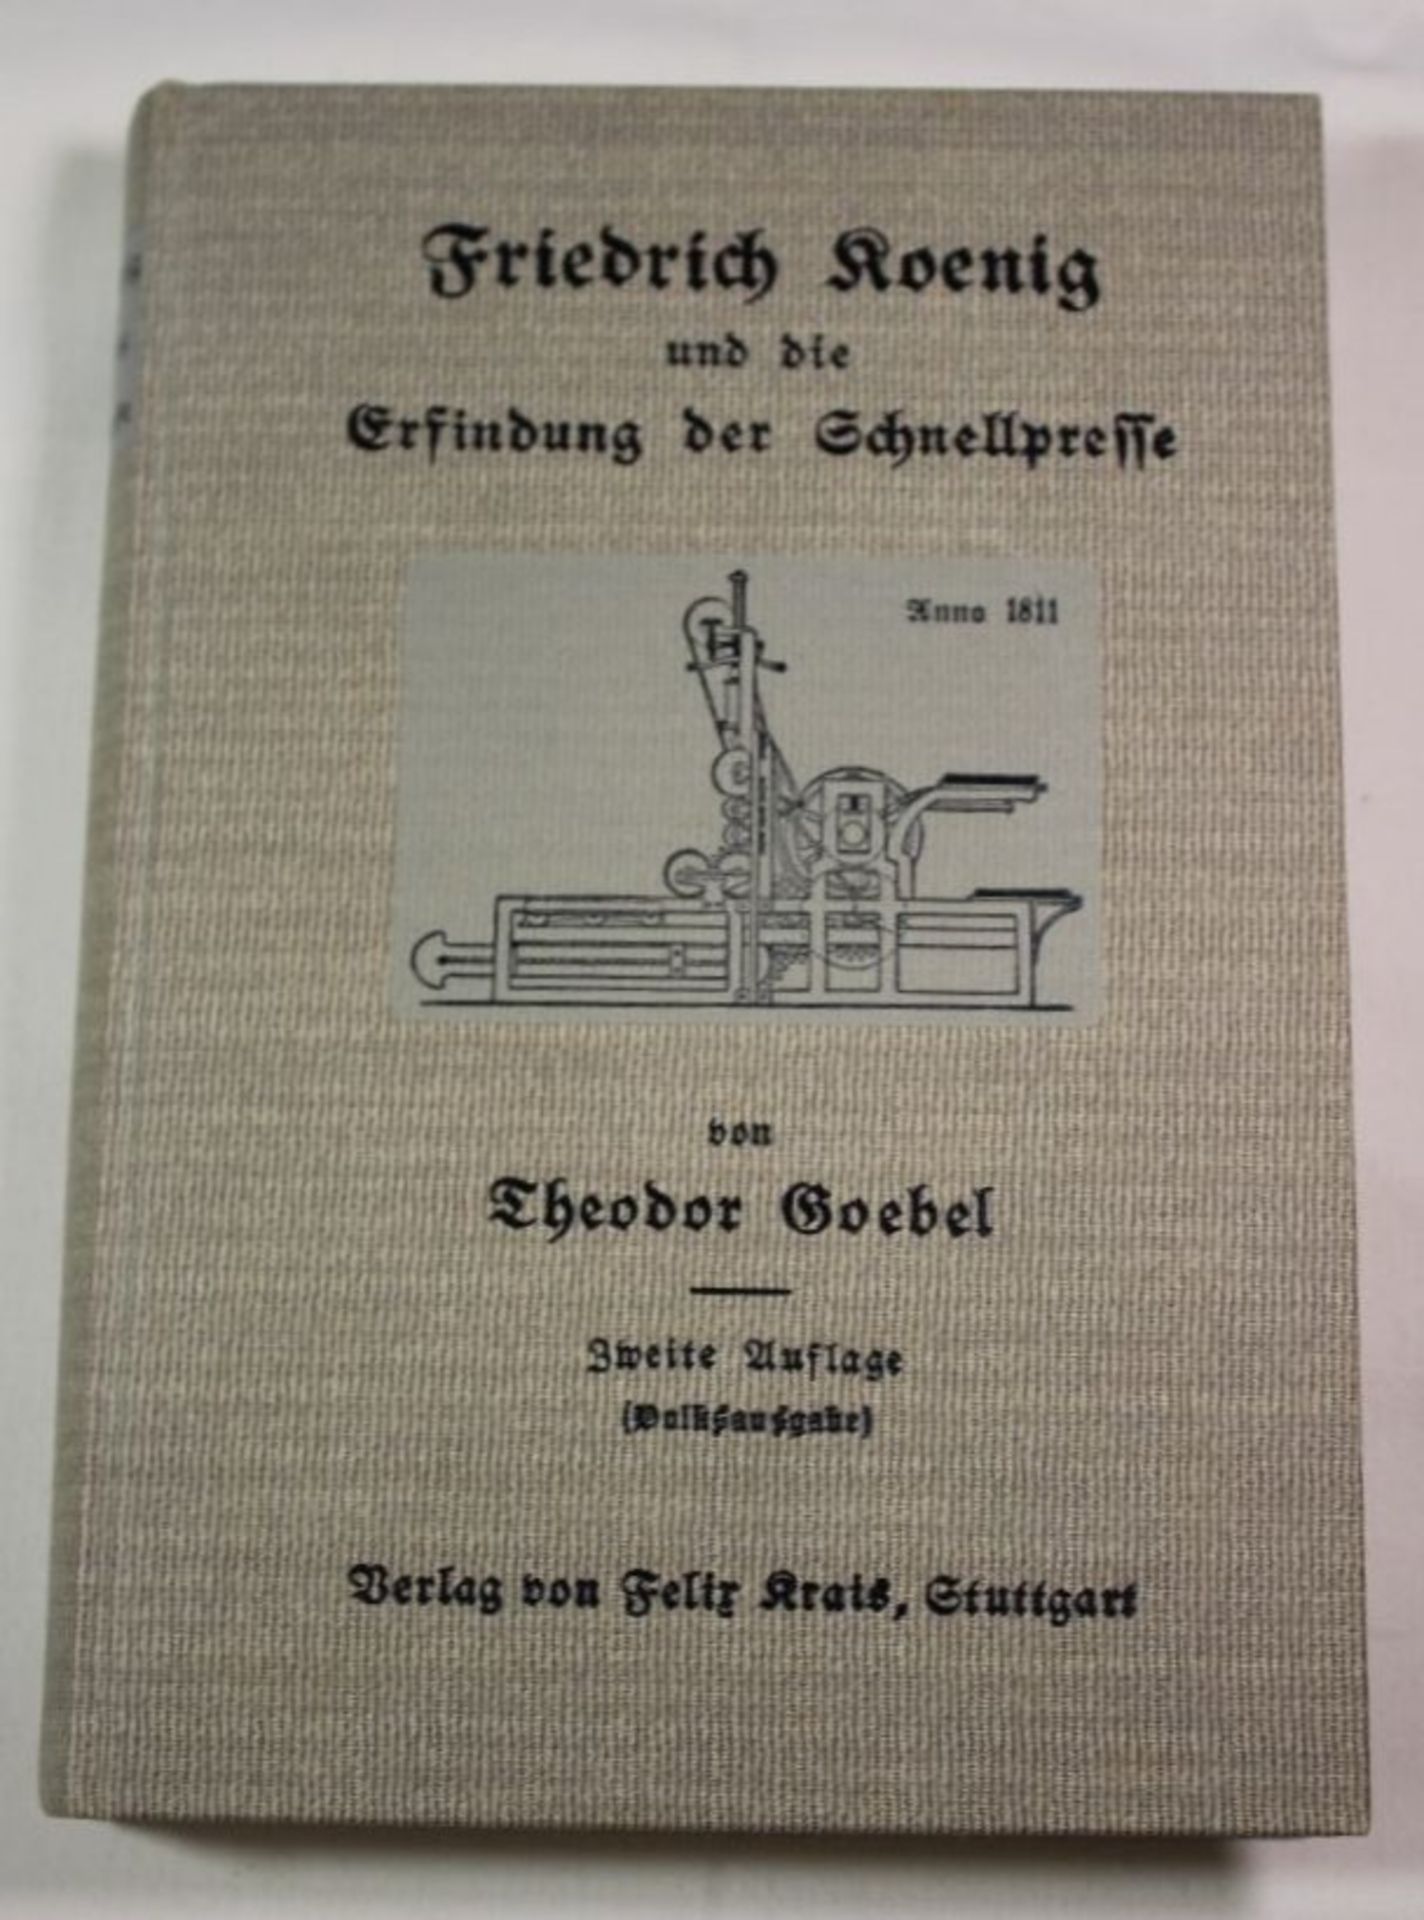 Theodor Goebel, Friedrich Koenig und die Erfindung der Schnellpresse, Stuttgart 1906.